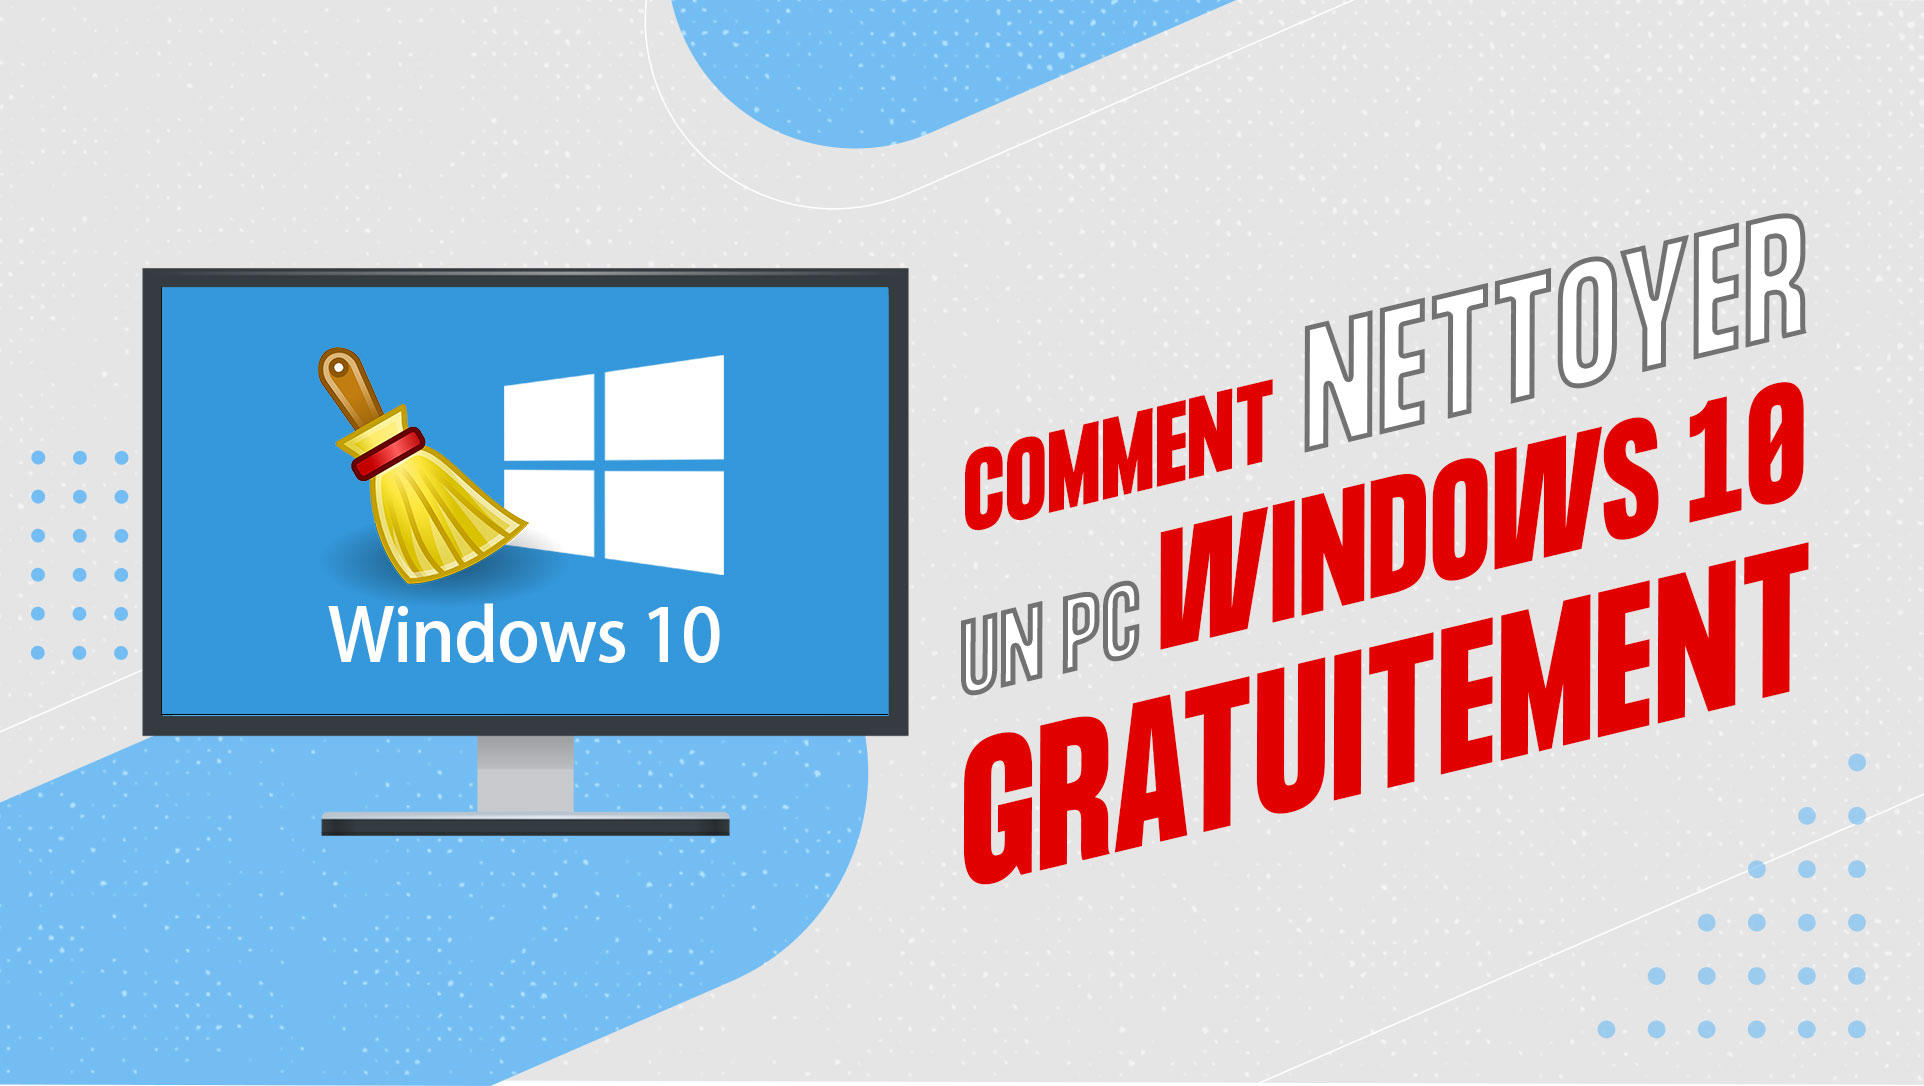 comment nettoyer un pc Windows 10 gratuitement